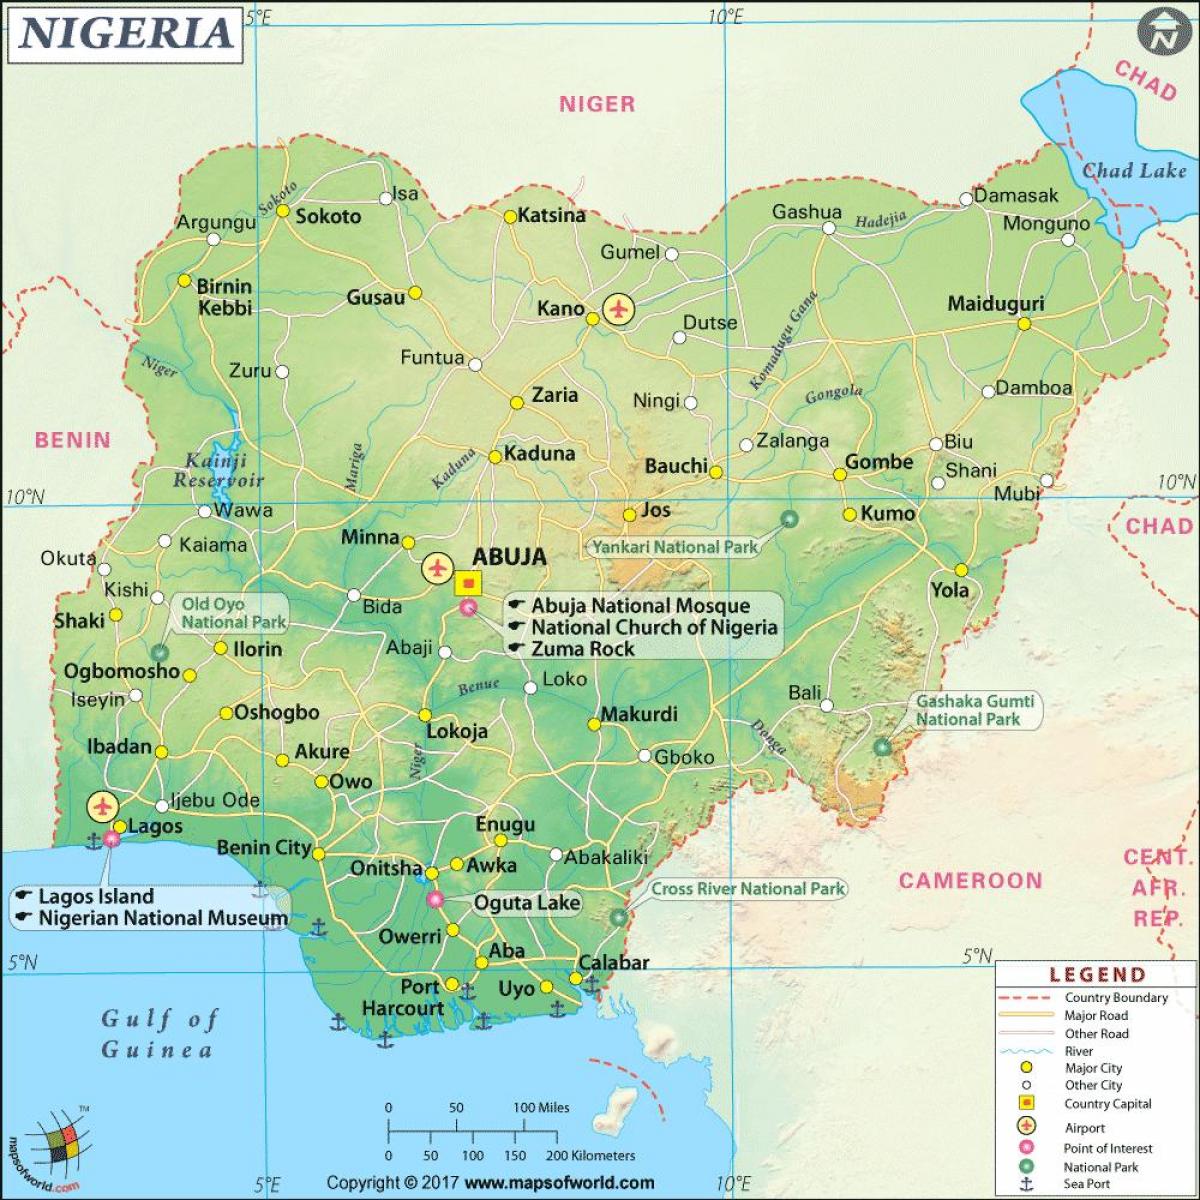 képek a nigériai térkép